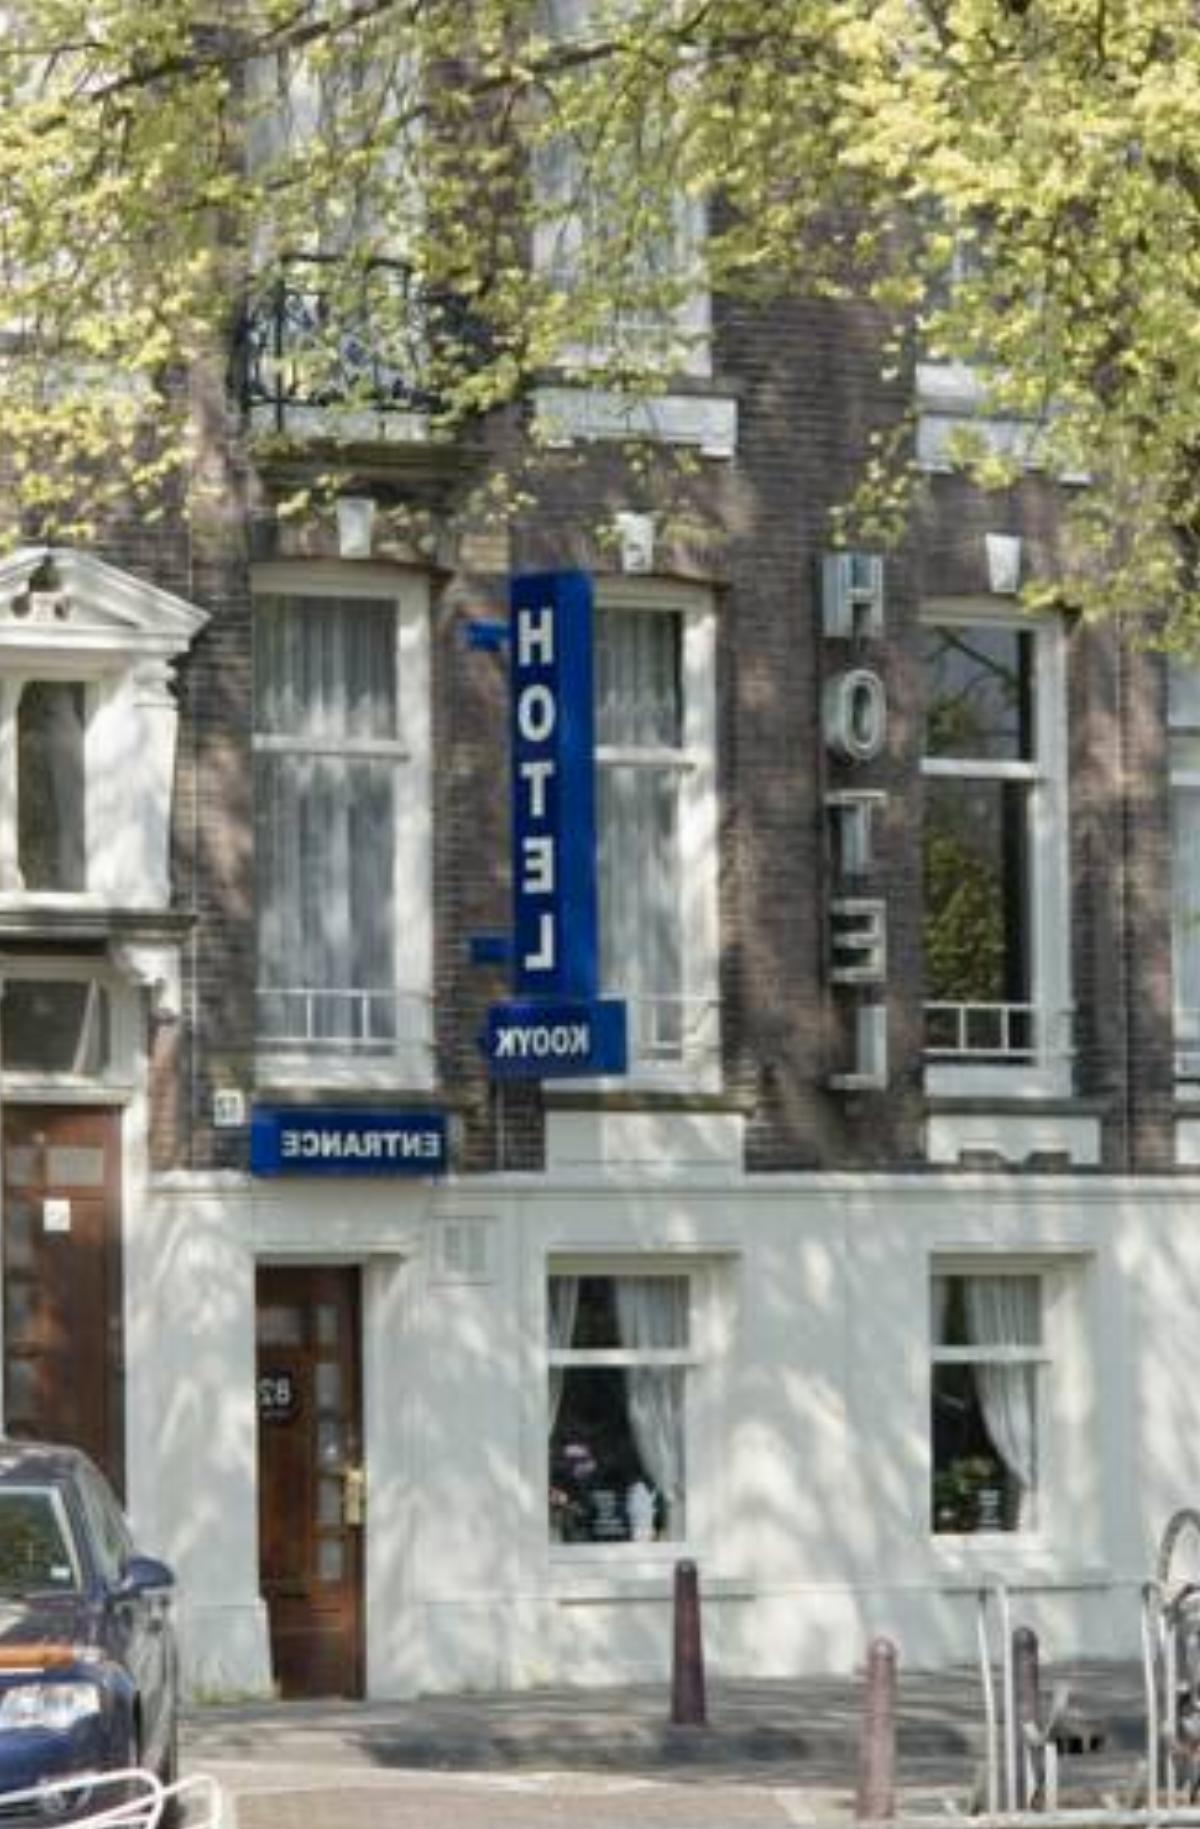 Family Hotel Kooyk Hotel Amsterdam Netherlands